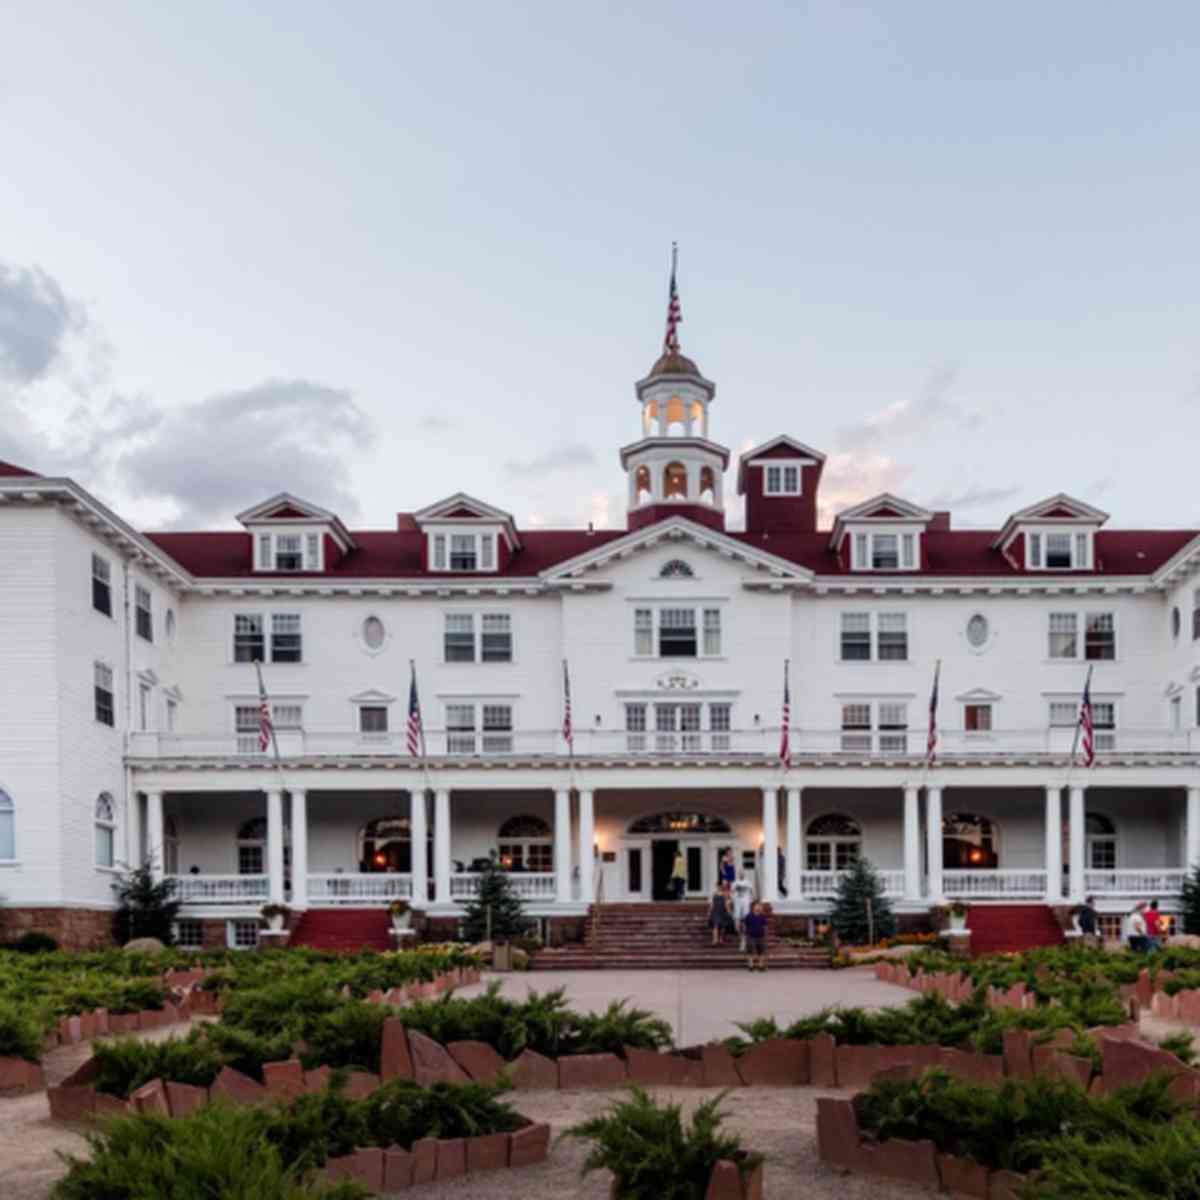 Hotel que foi inspiração para filme 'O Iluminado' desafia fãs a criarem  labirinto - GQ